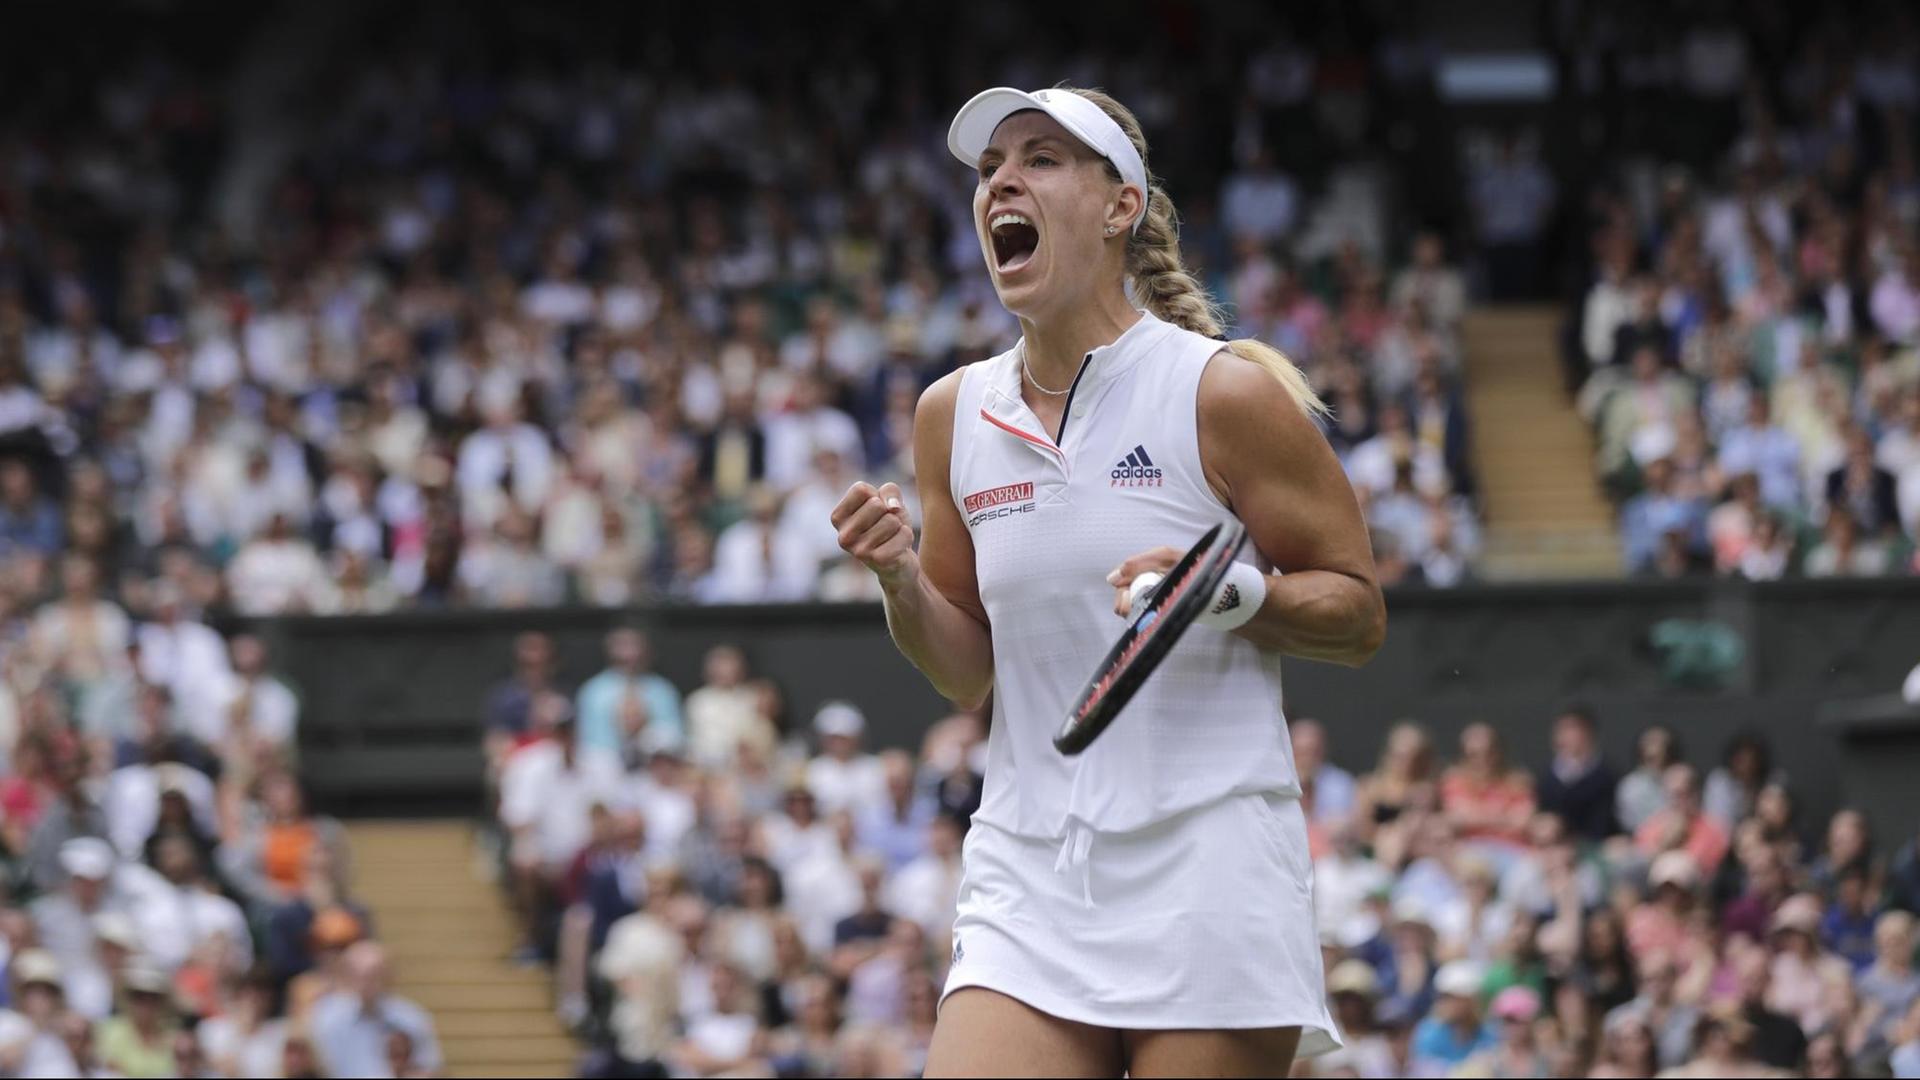 Das Bild zeigt die deutsche Tennisspielerin Angelique Kerber. Sie freut sich über ihr erfolgreiches Viertelfinale gegen die Russin Daria Kasatkina in Wimbledon.